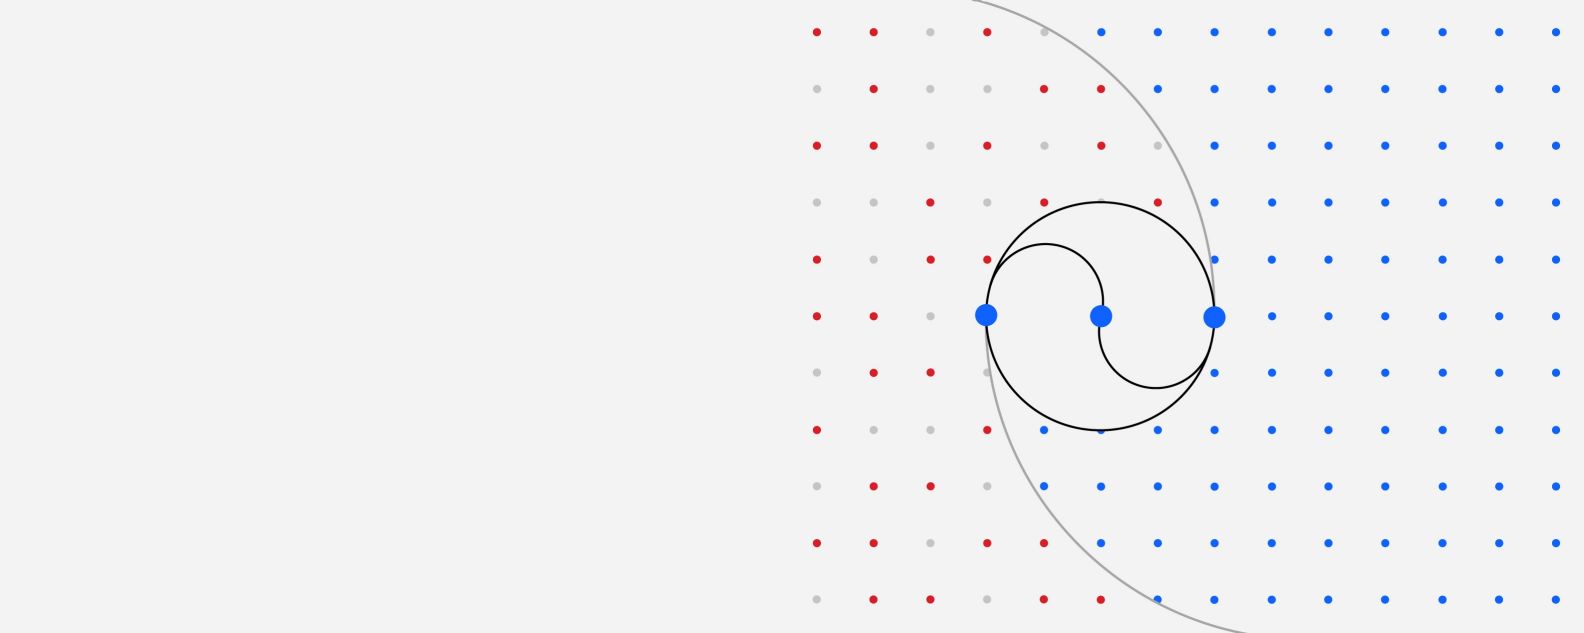 Illustrazione di una griglia di punti colorati in cui tre punti più grandi sono collegati da varie linee curve